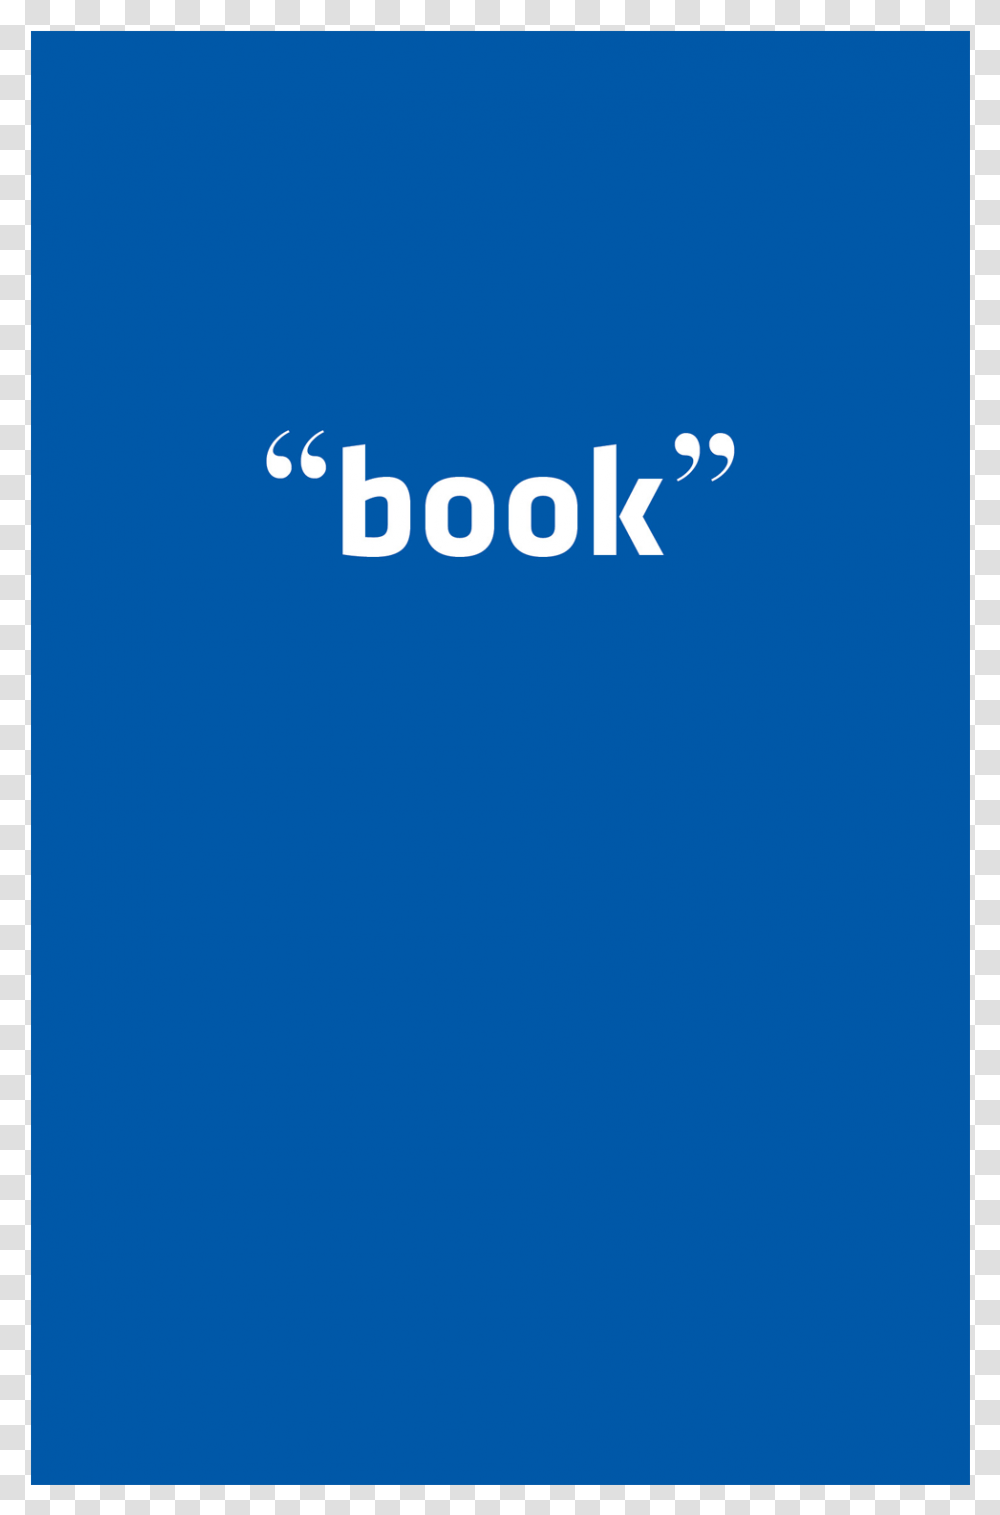 Book Nemo Librizzi Majorelle Blue, Logo, Word Transparent Png